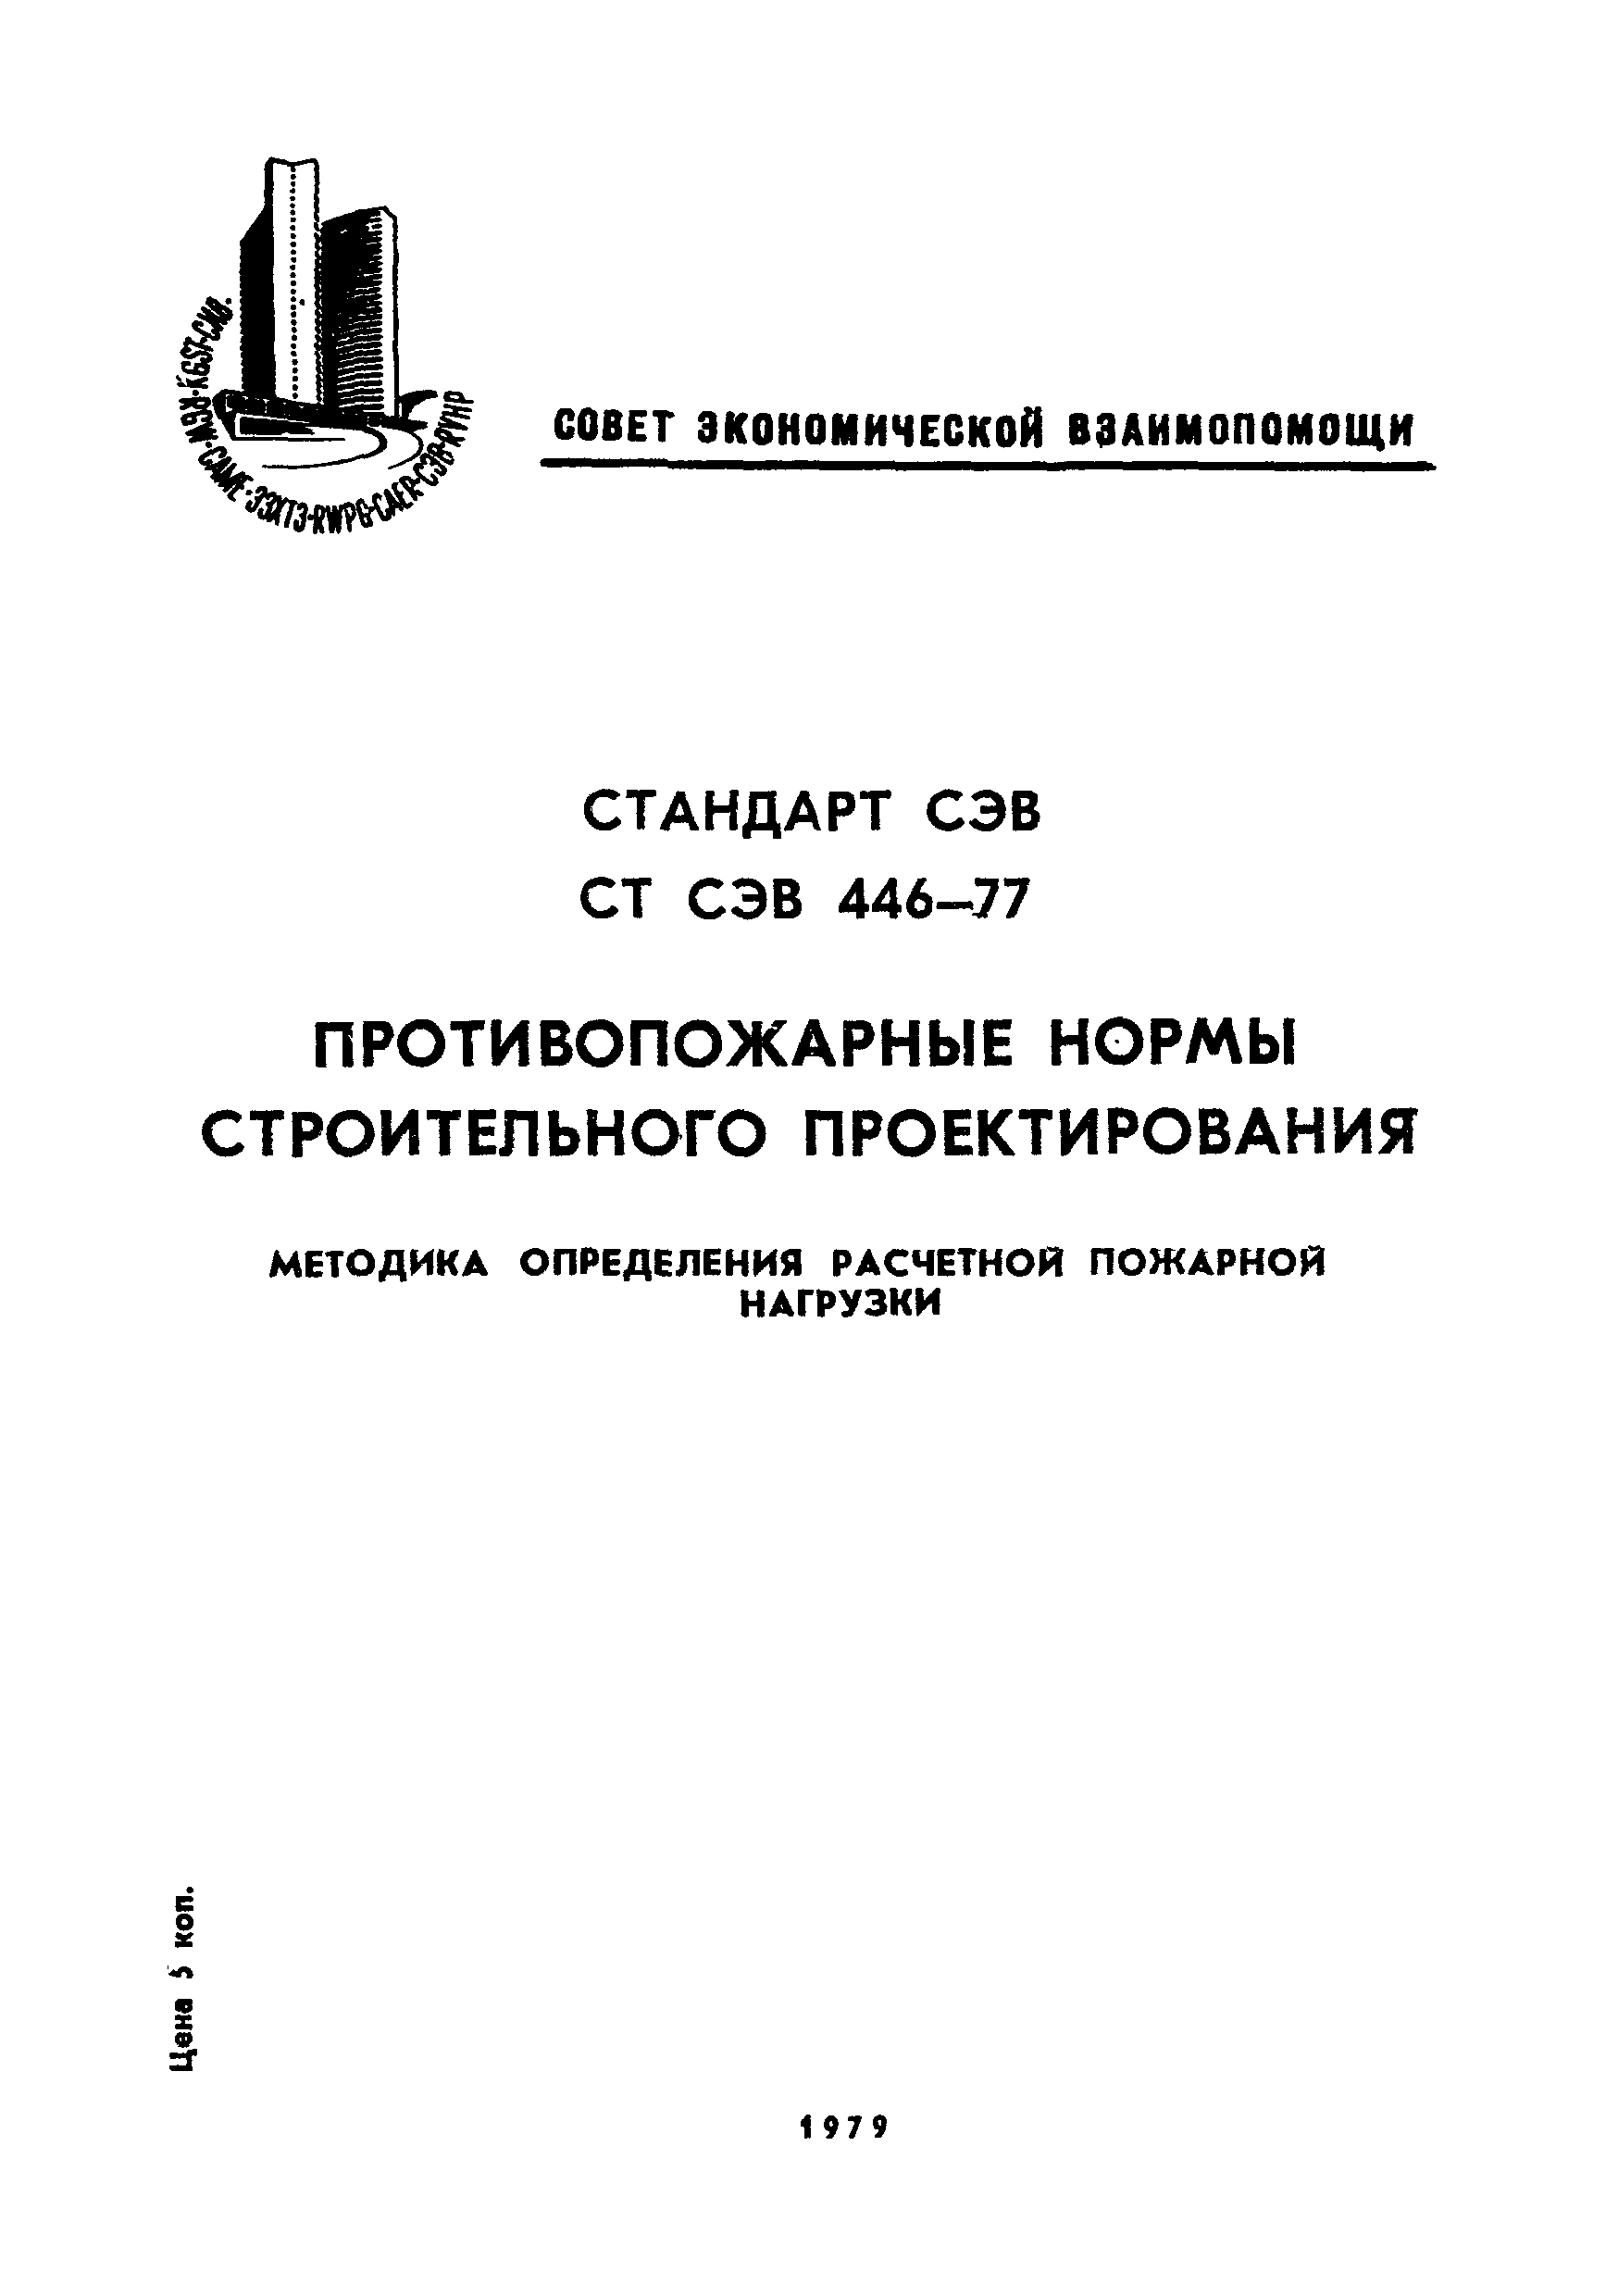 СТ СЭВ 446-77